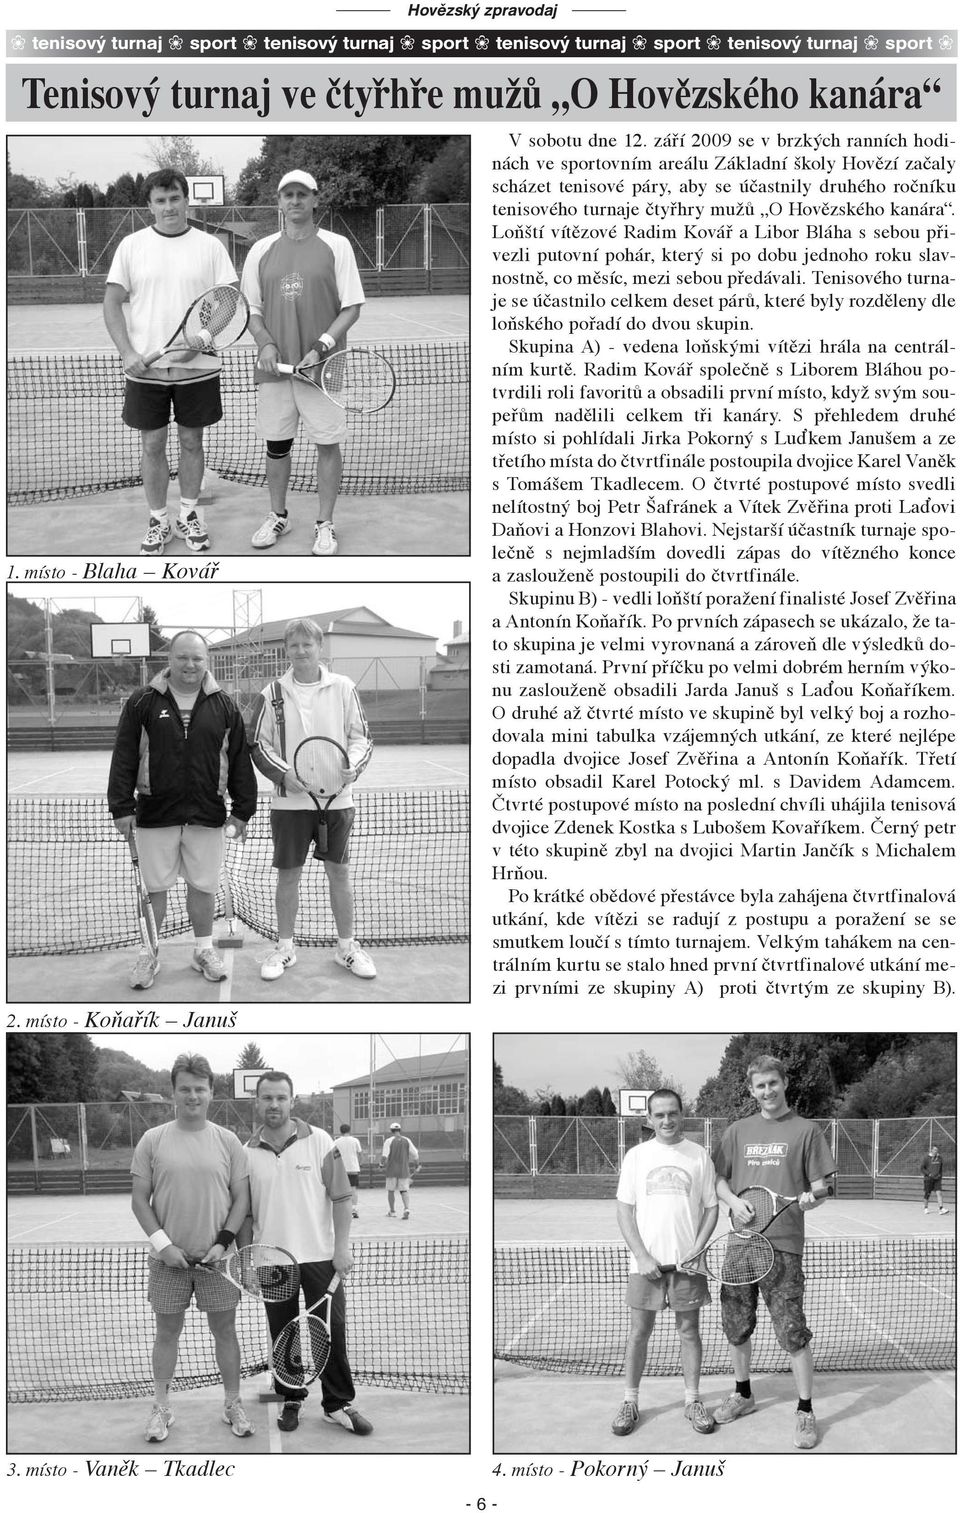 září 2009 se v brzkých ranních hodinách ve sportovním areálu Základní školy Hovězí začaly scházet tenisové páry, aby se účastnily druhého ročníku tenisového turnaje čtyřhry mužů O Hovězského kanára.